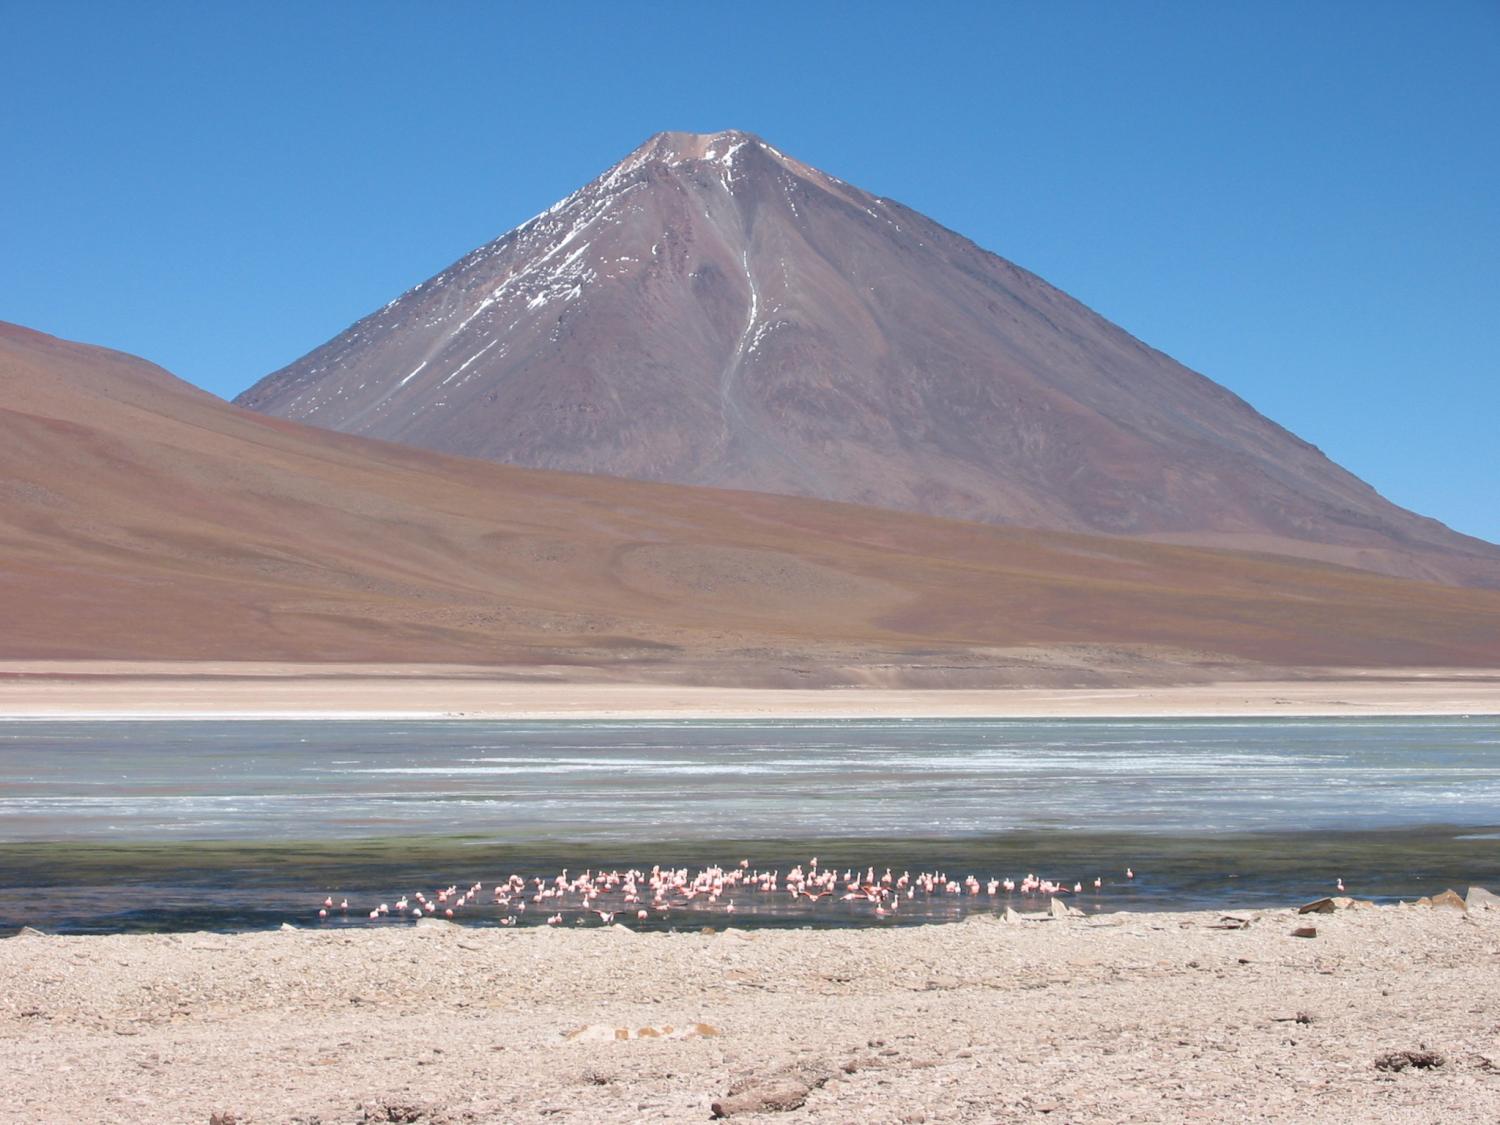 Lake Licancabur, Bolivia/Chile